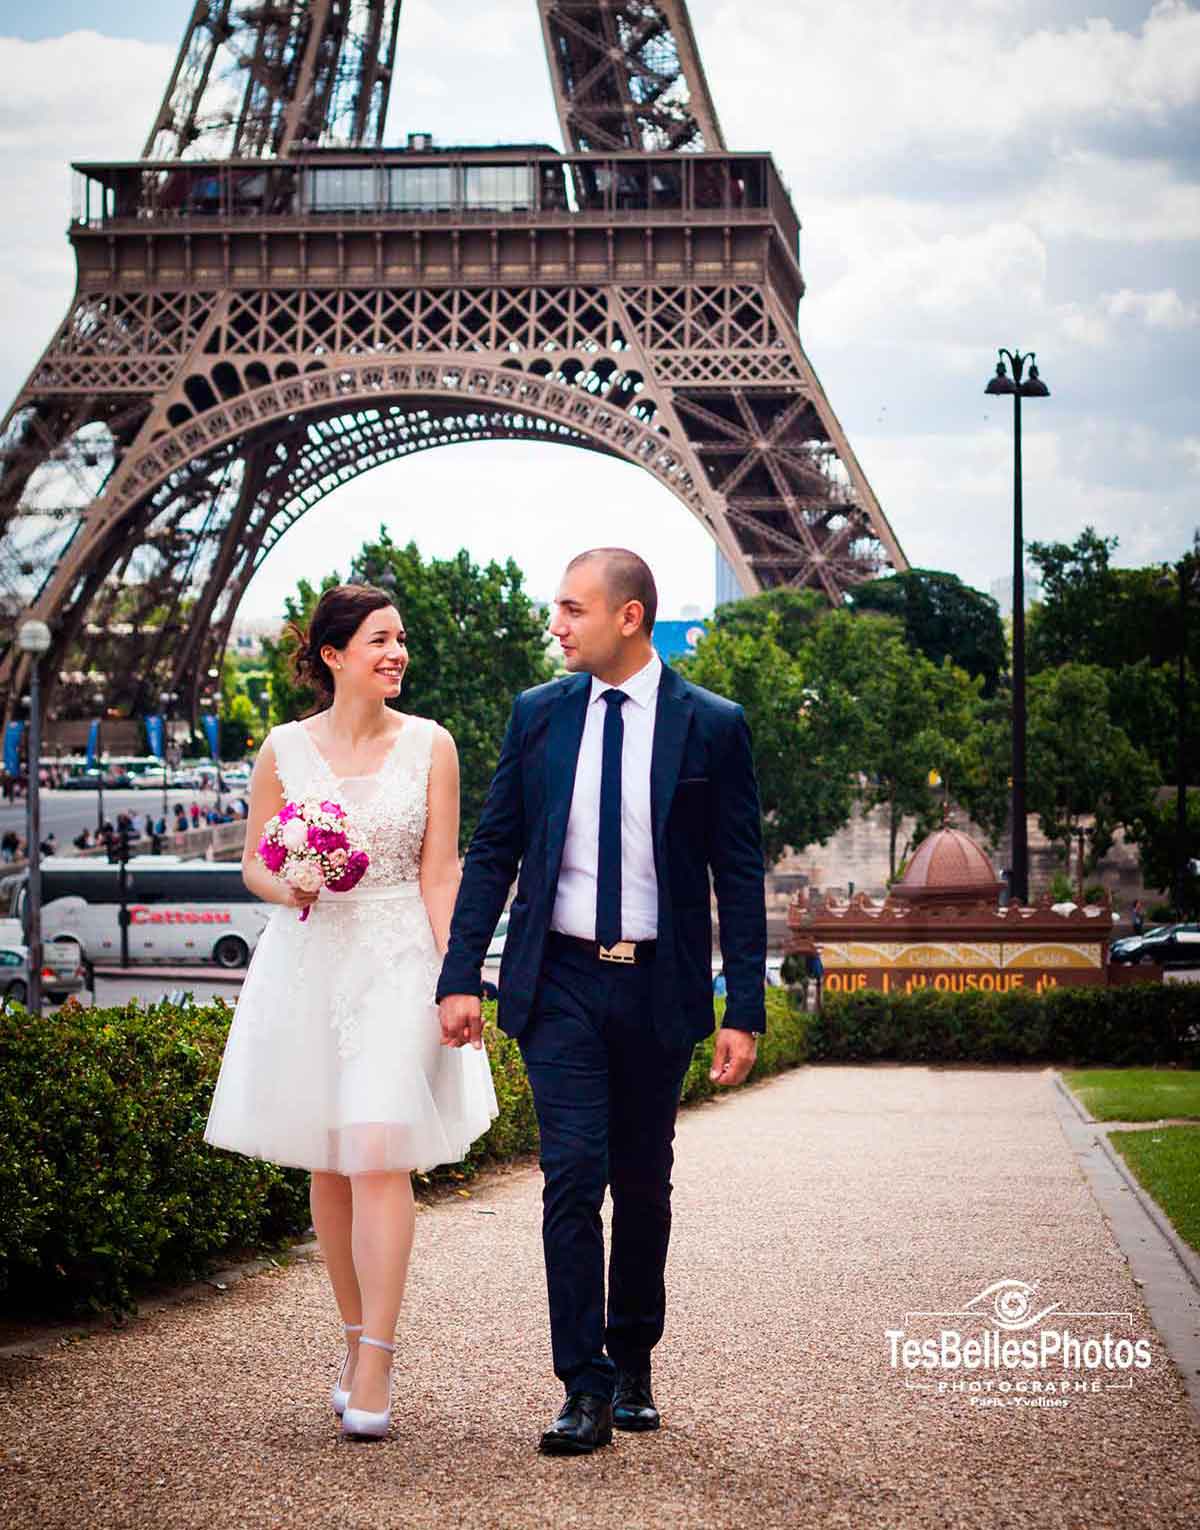 Photo de mariage à Paris au pied de la Tour Eiffel, séance photo de couple de mariage à Paris, photographe mariage Paris - Studio TesBellesPhotos